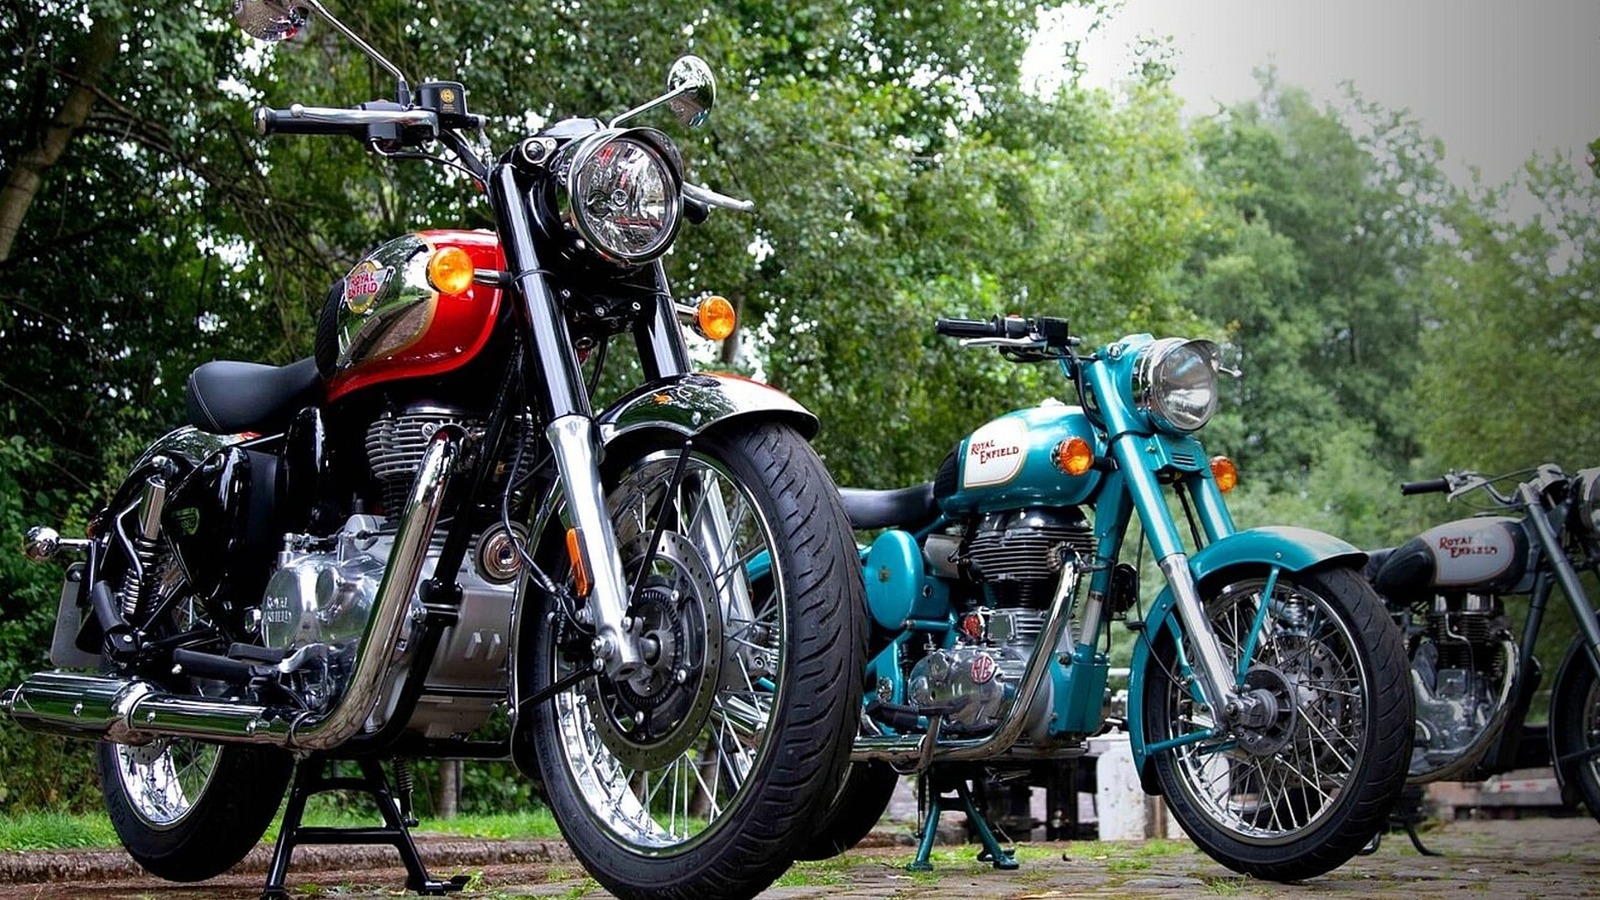 ¿Dónde se fabrican las motocicletas Royal Enfield y quién es el propietario de la empresa ahora?